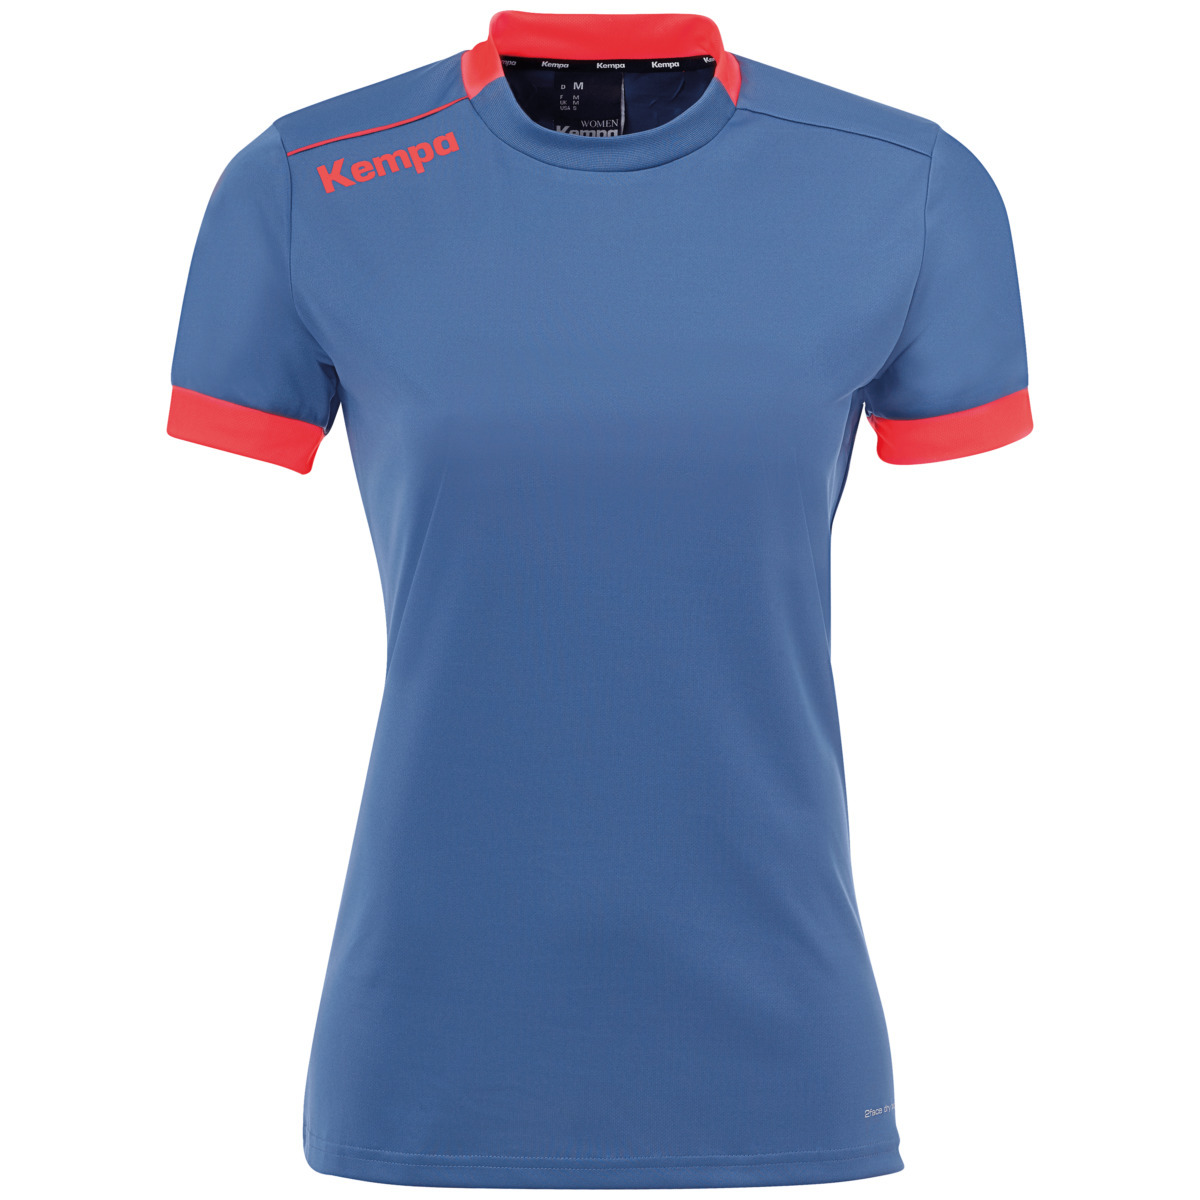 Camiseta Maillot Kempa Player - azul-naranja - 